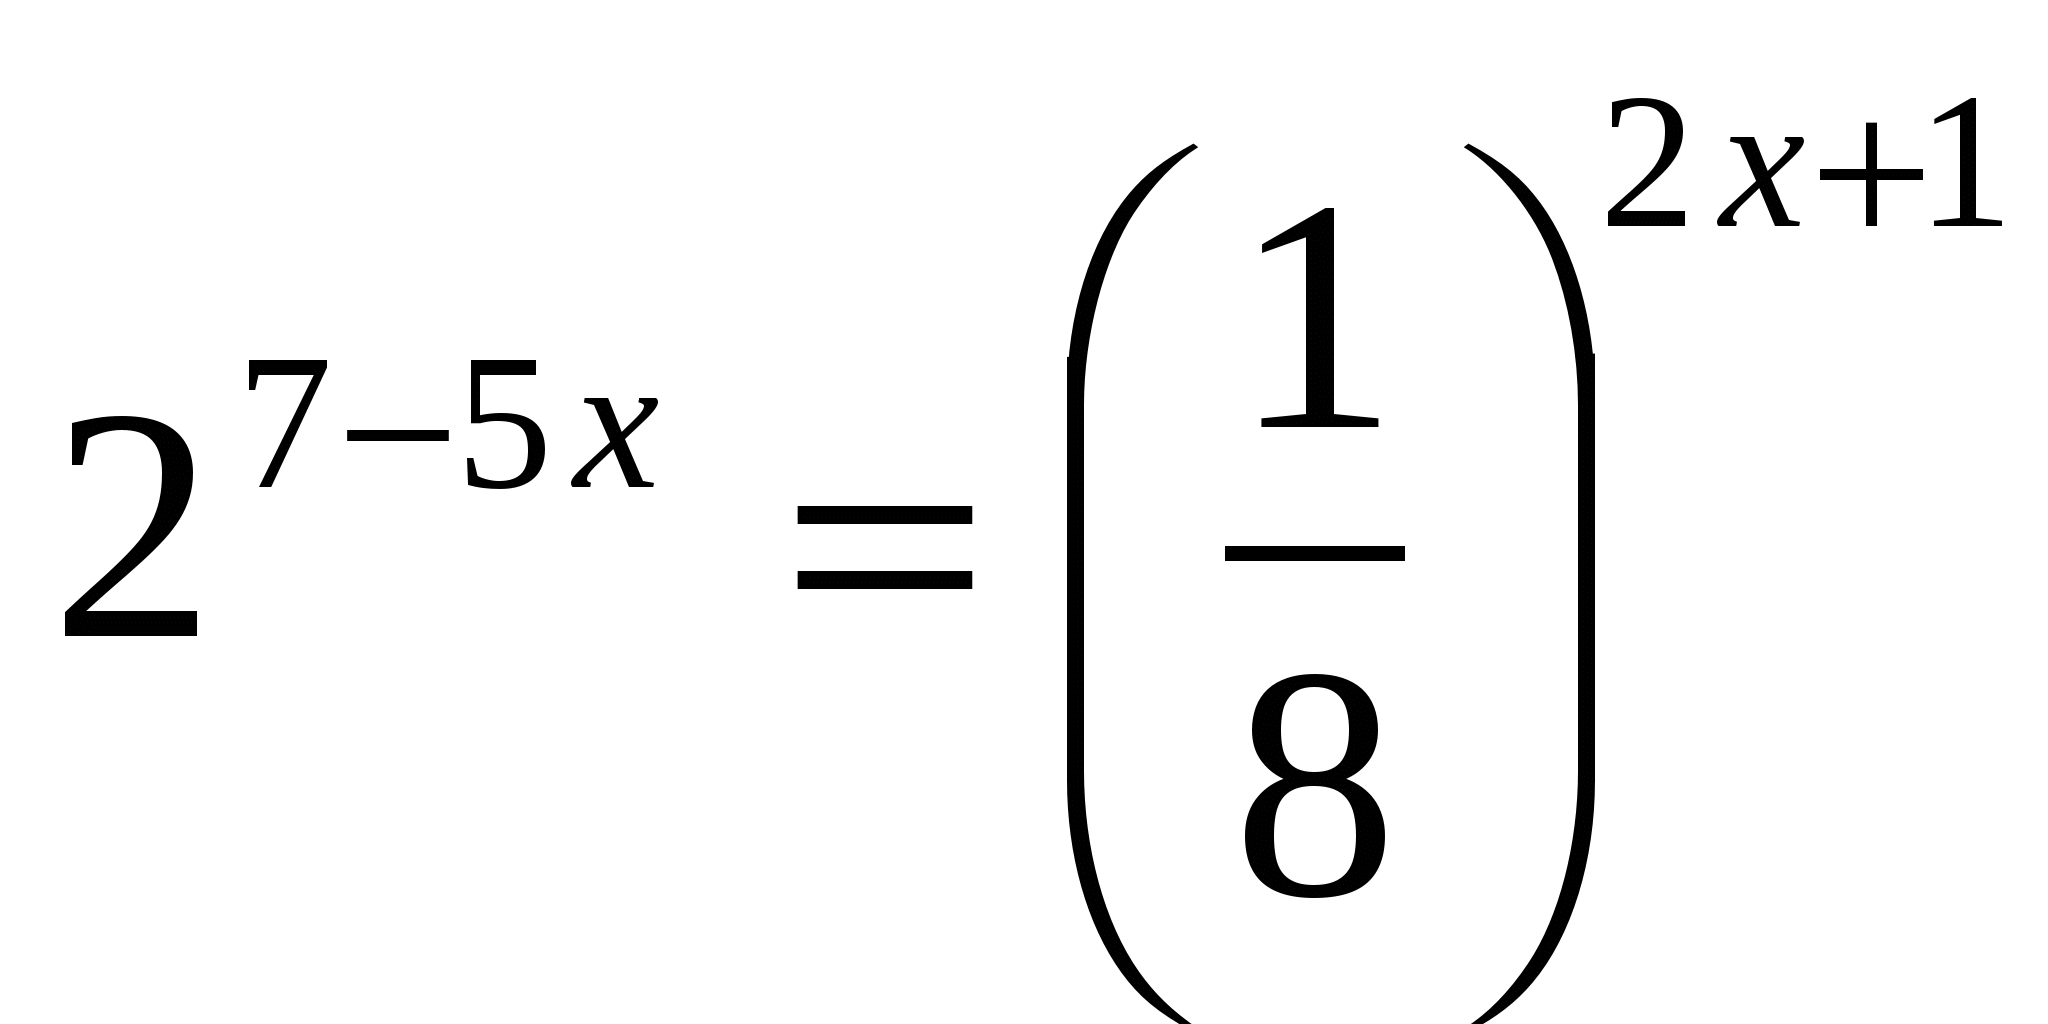 Конспект по алгебре для 11 класса «Решение показательных уравнений»